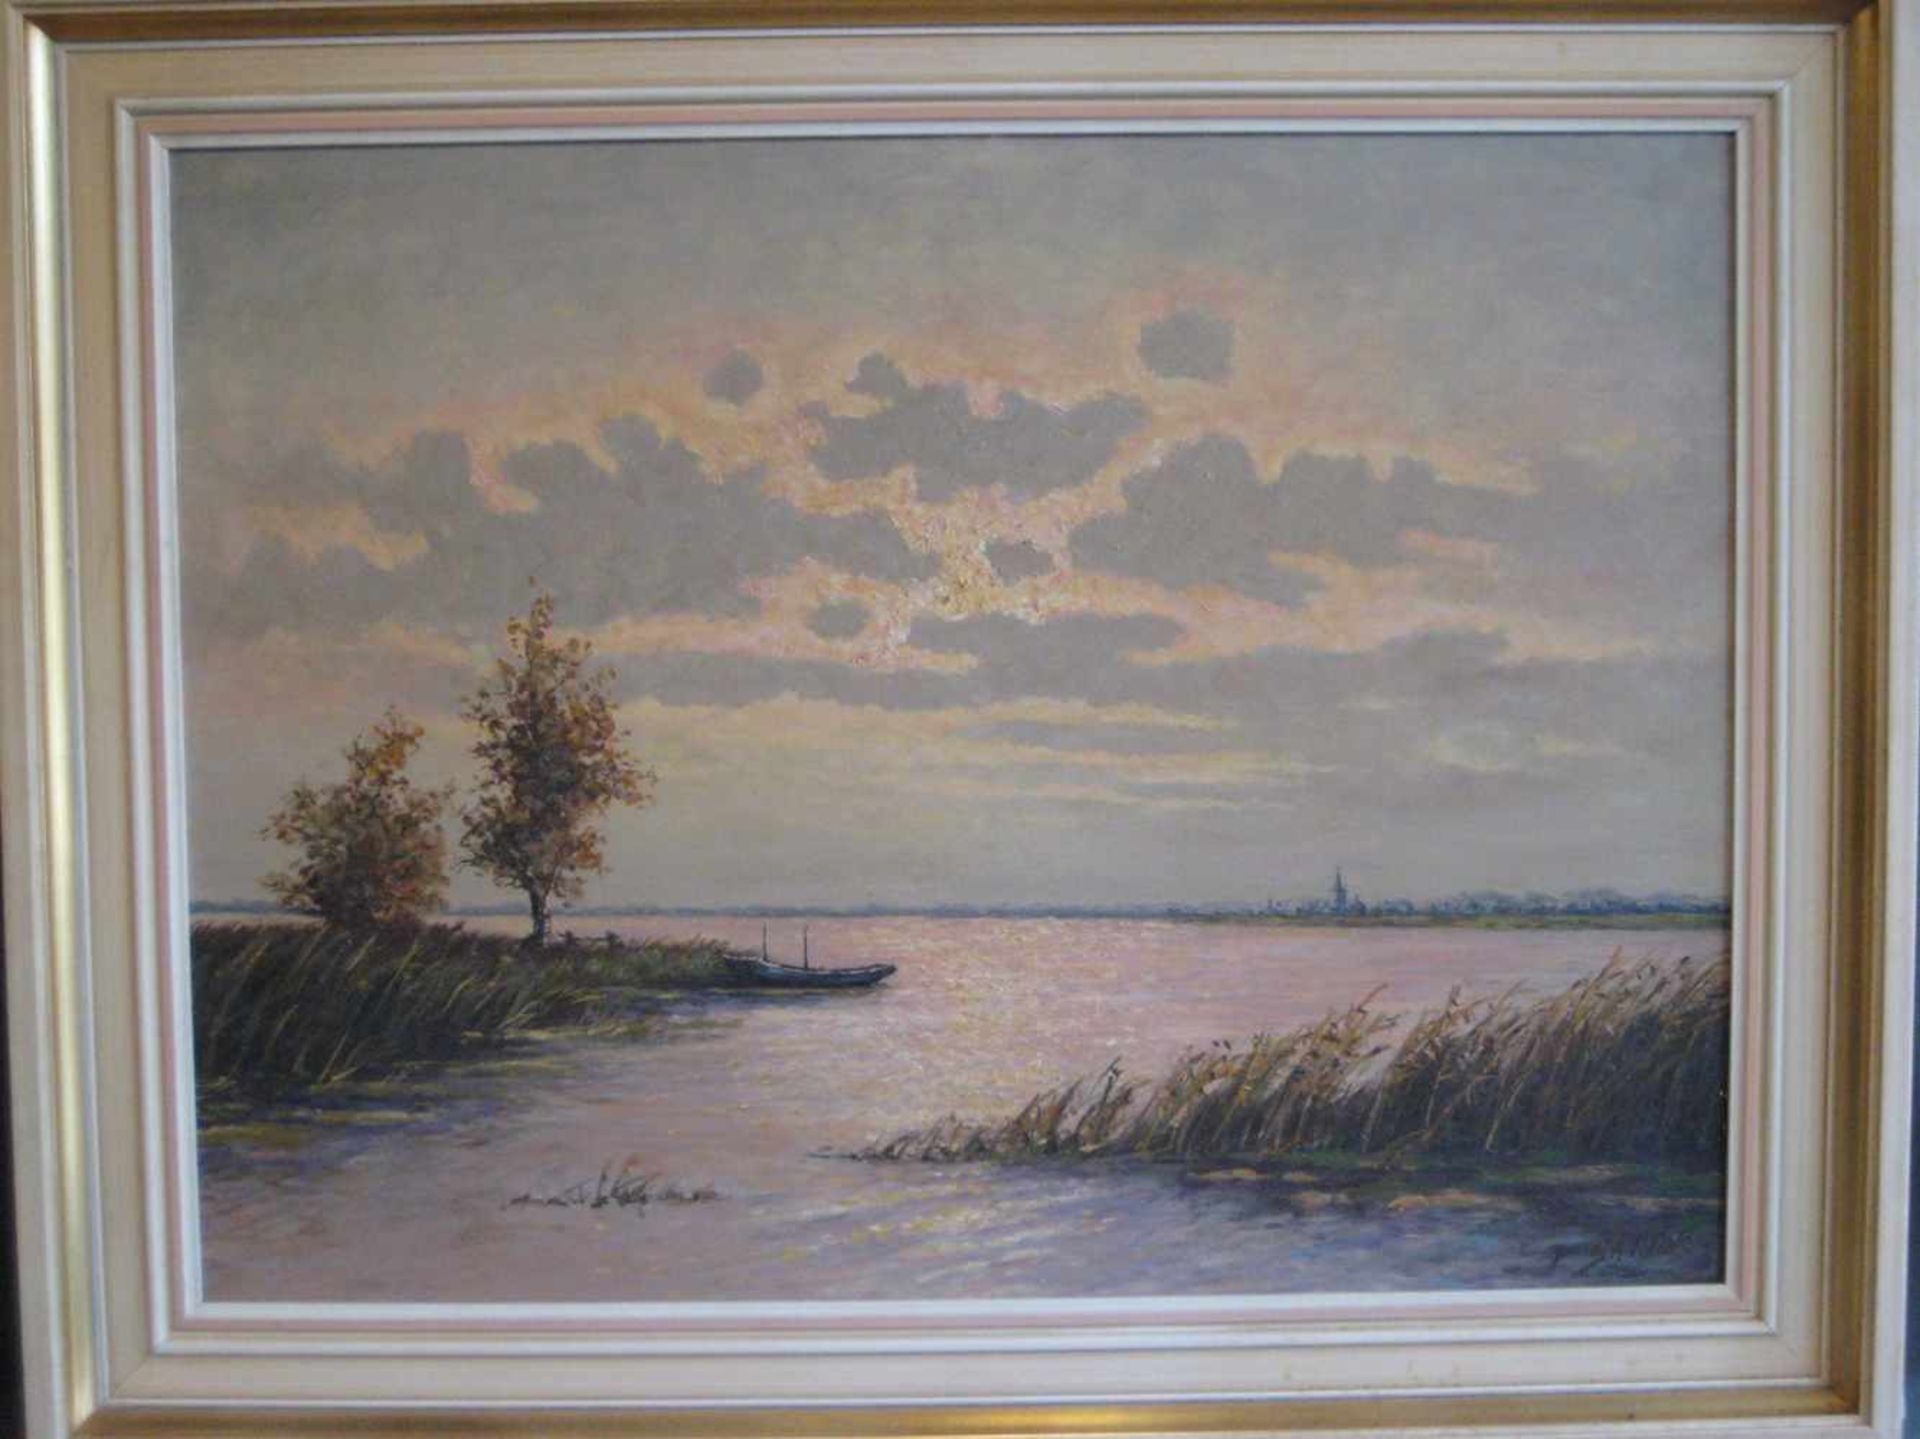 Sartor, P., "Seenansicht", re.u.sign., Öl/Malerpappe, 62 x 81,5 cm, R.- - -19.00 % buyer's premium